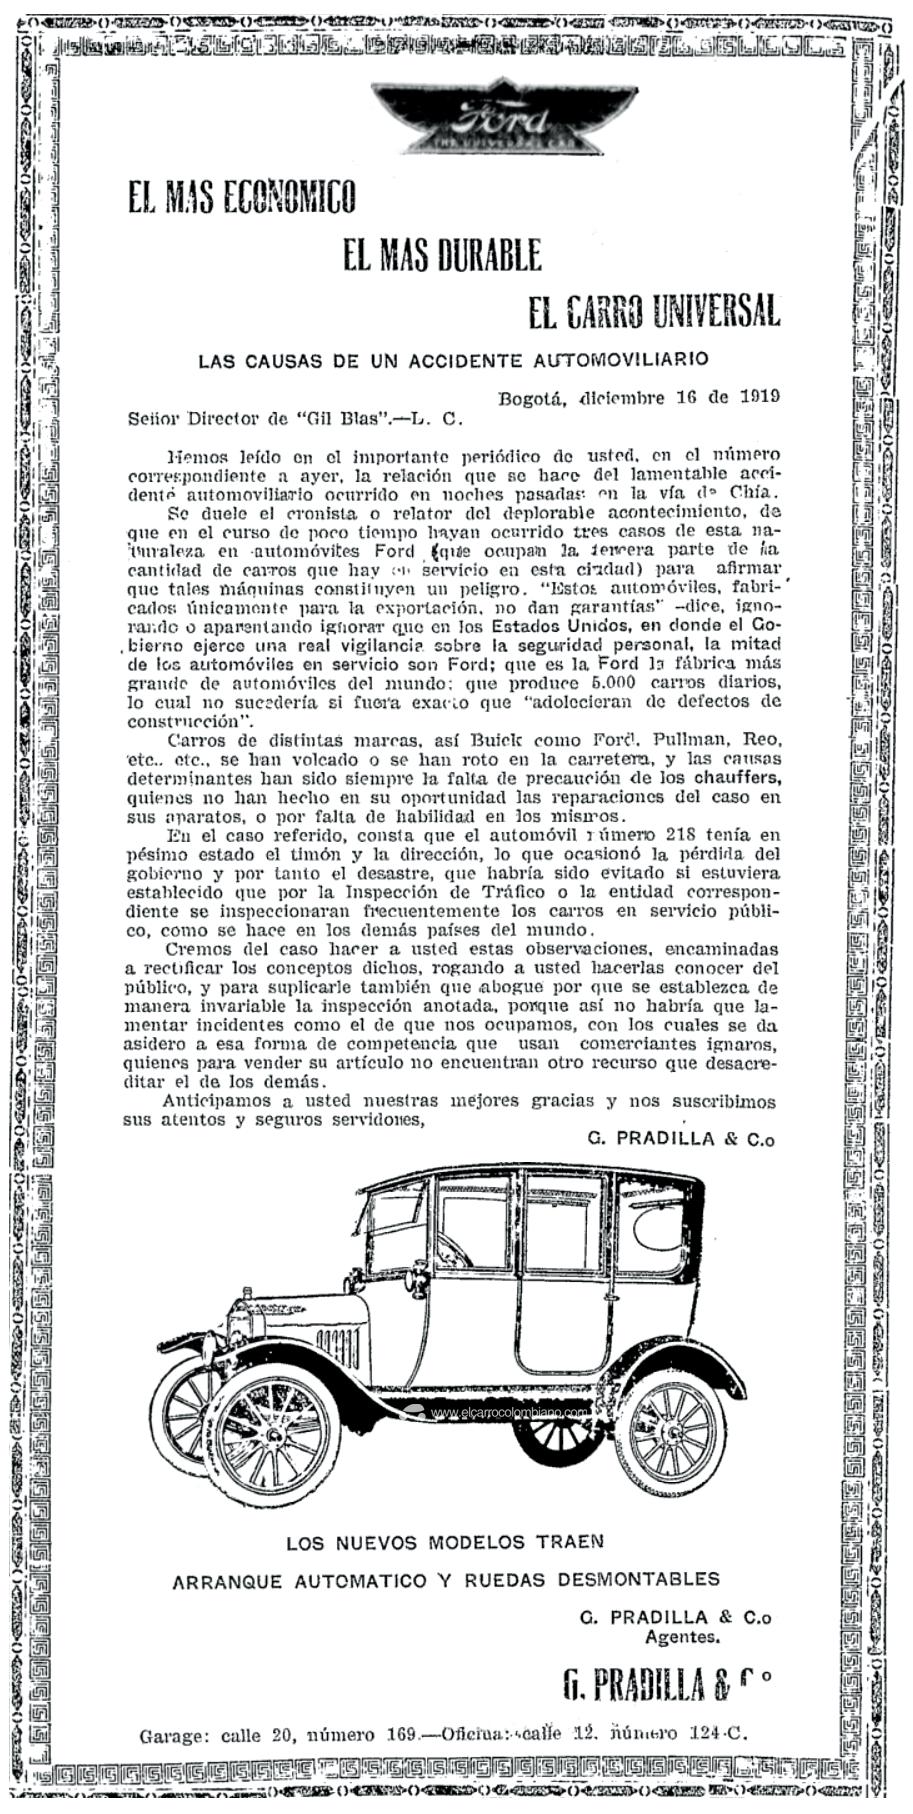 ford t, ford t colombia, historia del carro en colombia, primeros carros en colombia, primeros carros que llegaron a colombia, ford t 1917, colombia a comienzos del siglo xx, primer carro popular de la historia, primeros autos en colombia, historia de la publicidad en colombia